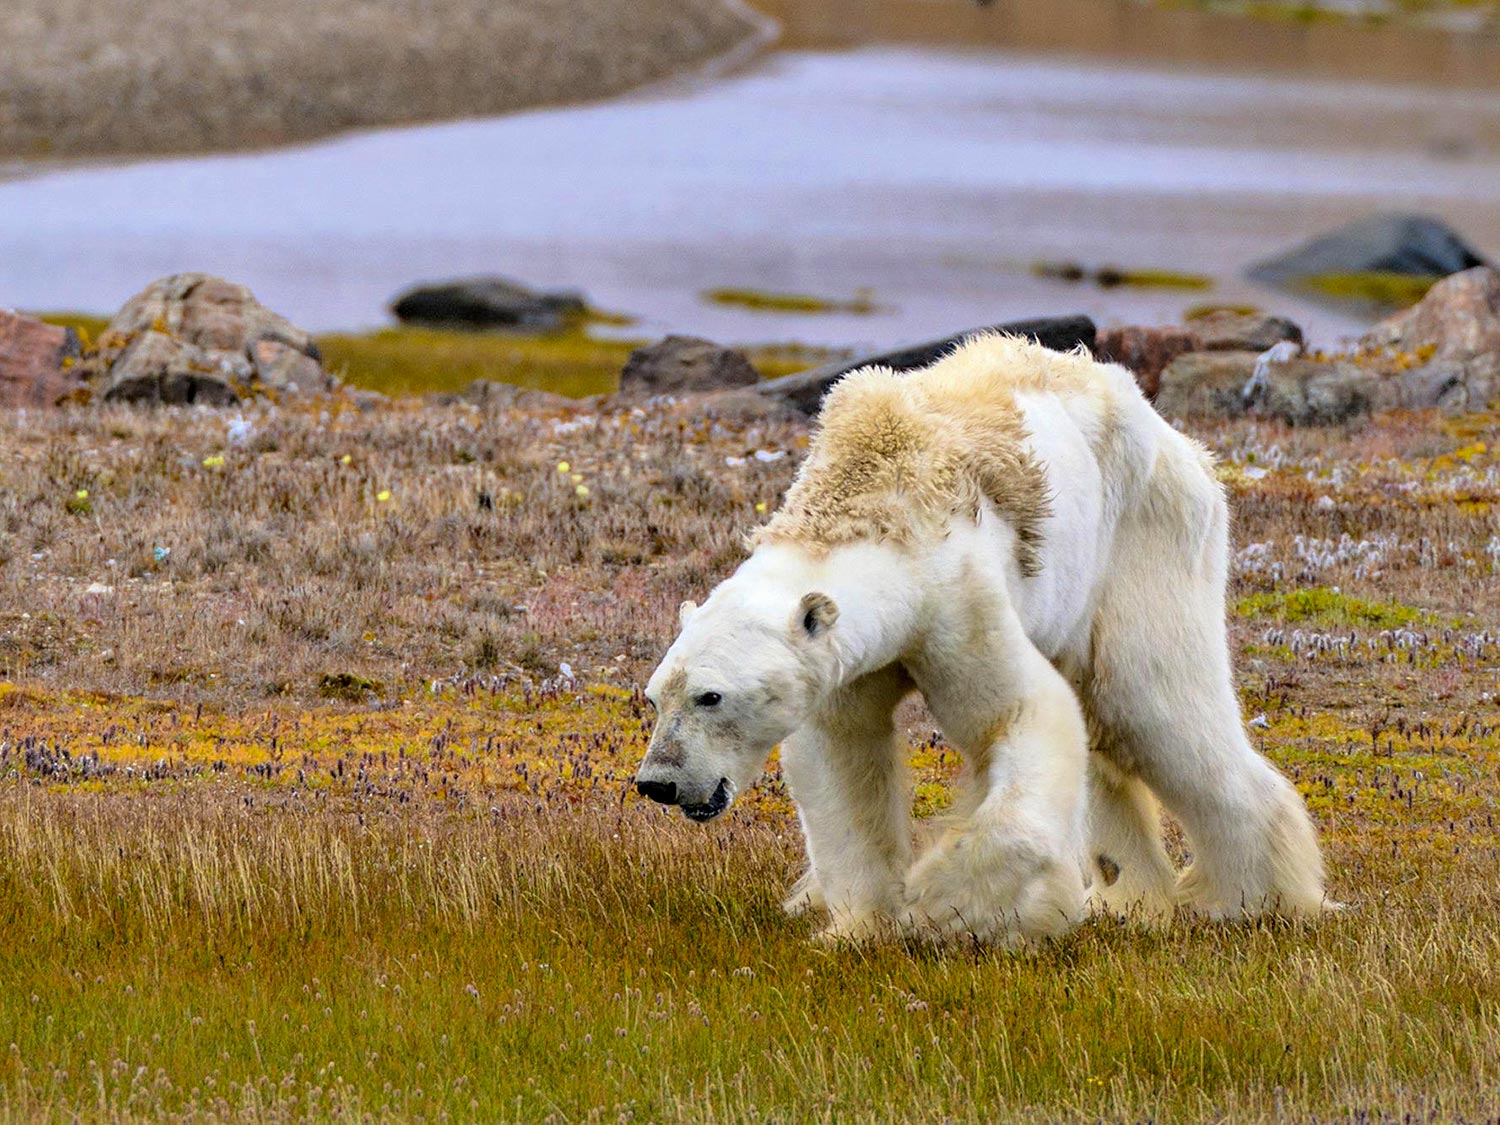 2017, Paul Nicklen: l'orso polare morente nel villaggio abbandonato degli Inuit